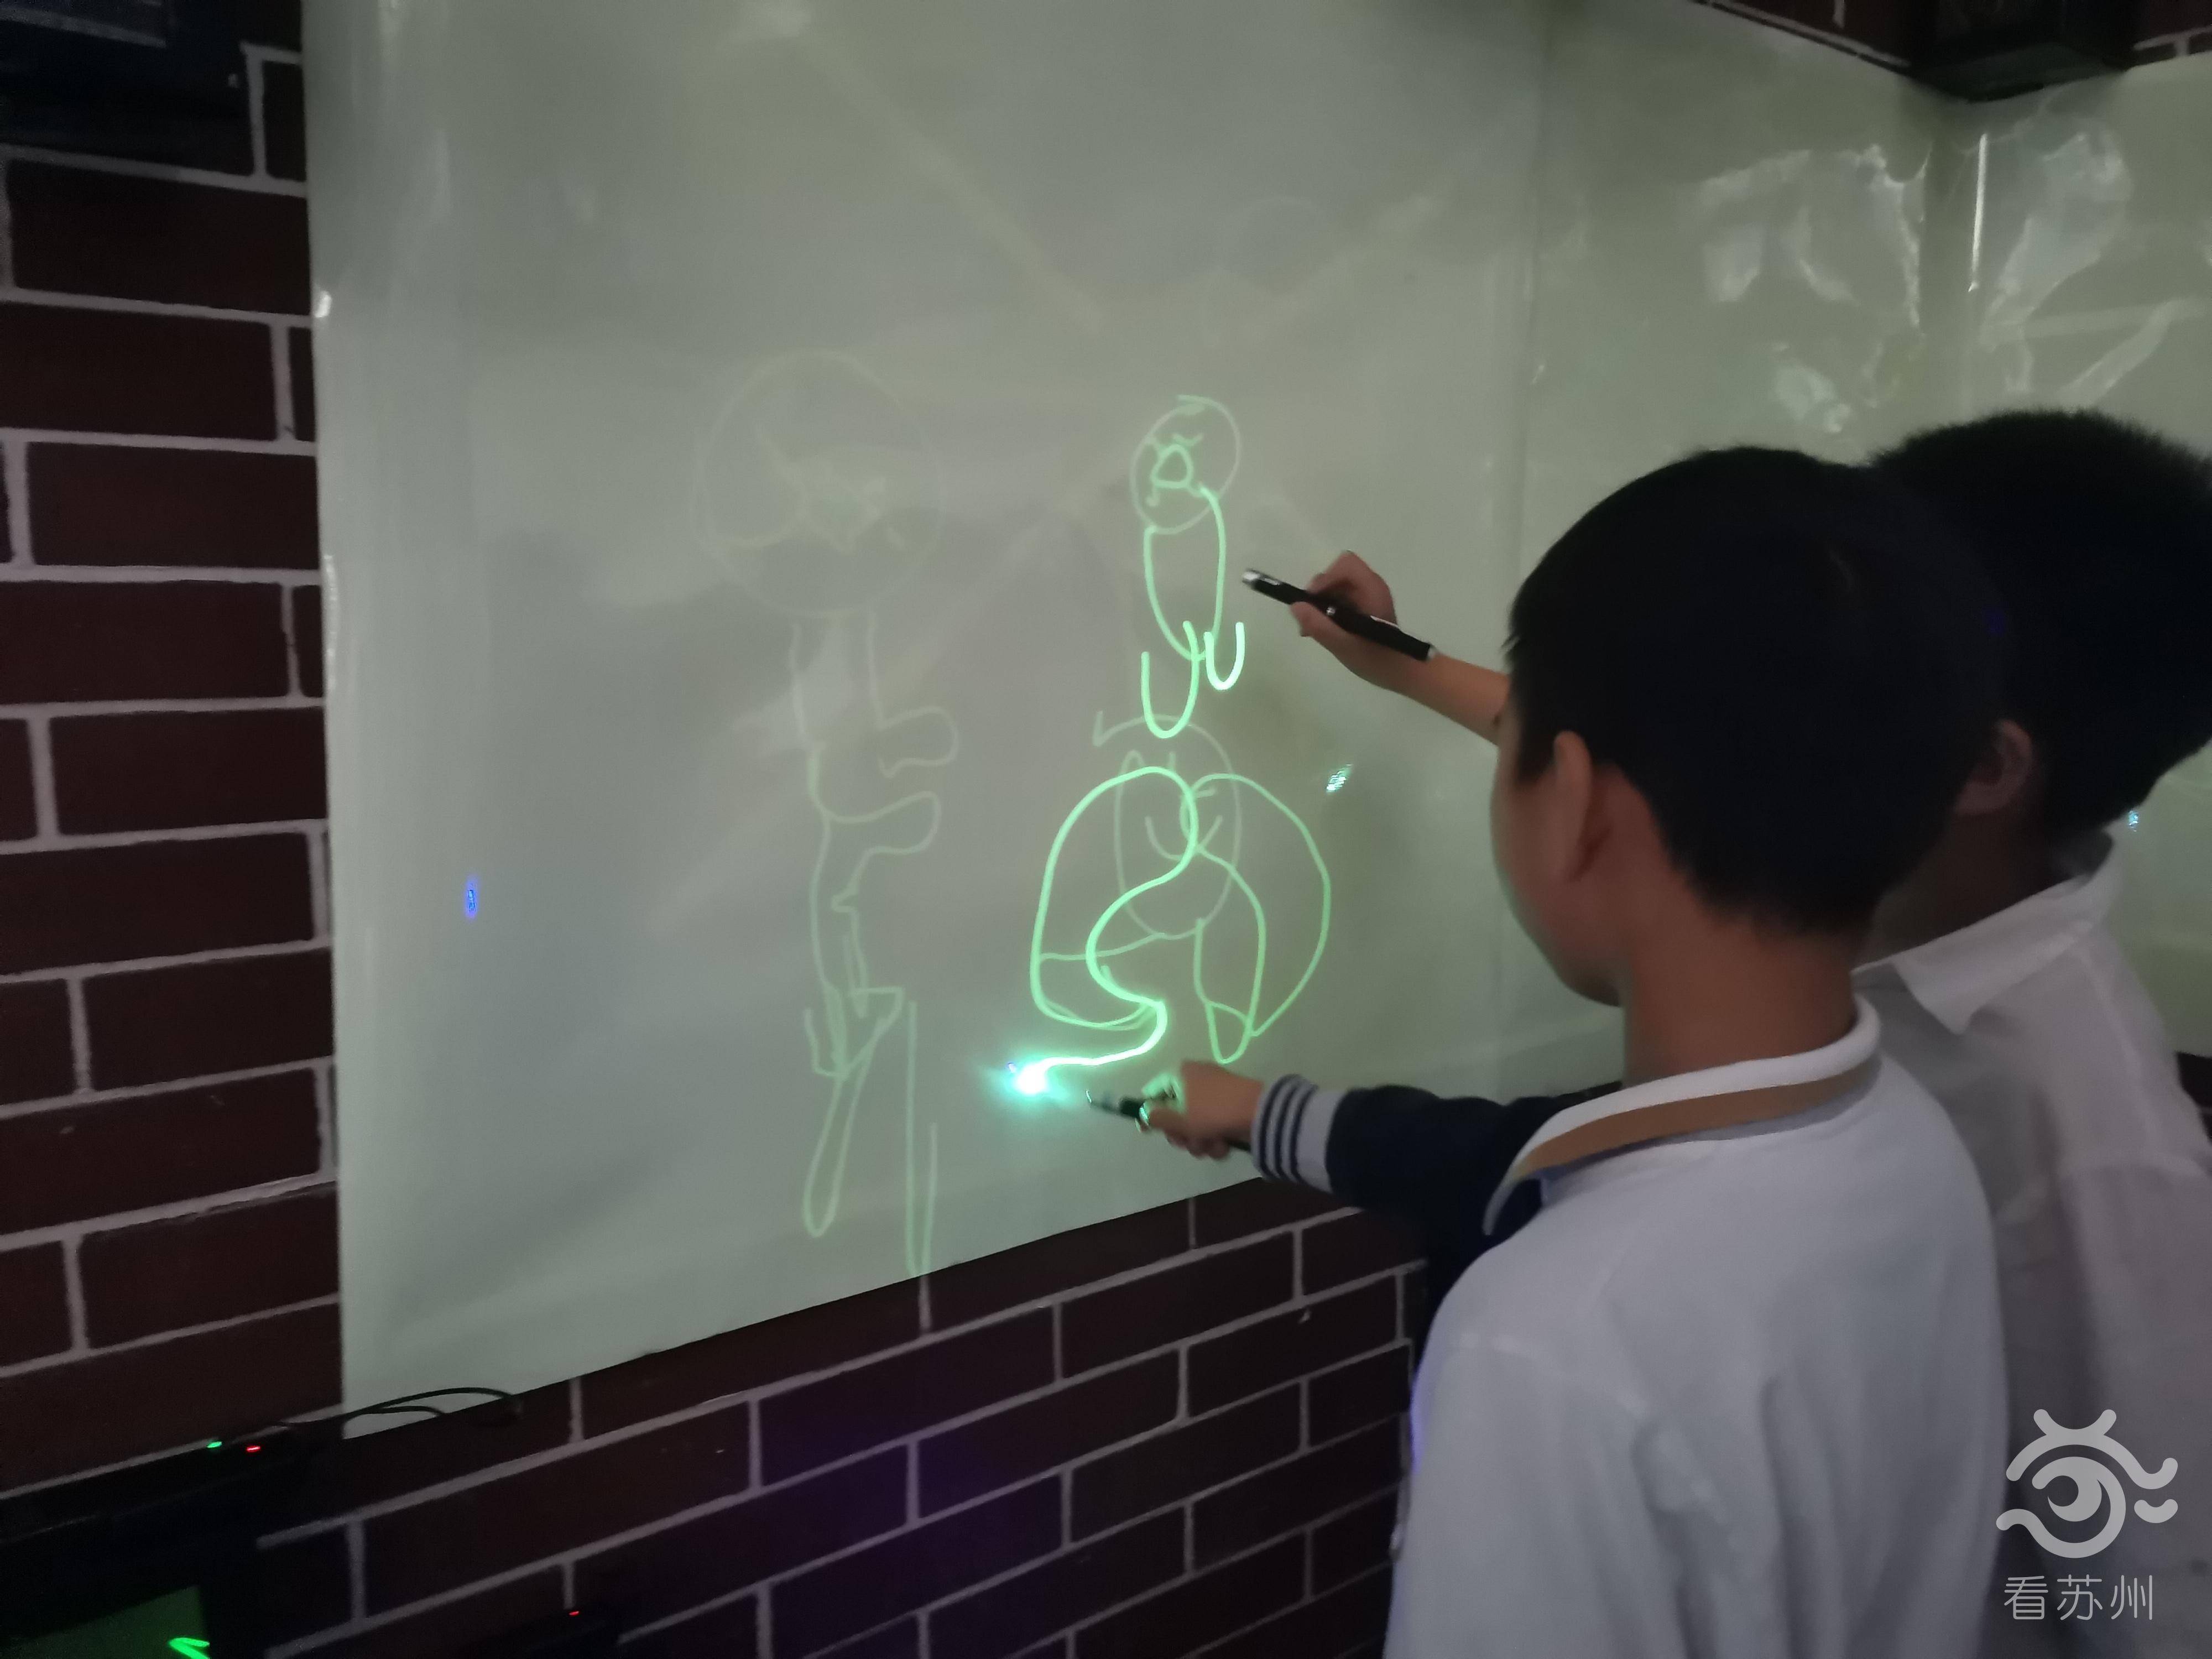 11月19日,苏州一群有创意的小学生们用手电筒完成了一幅幅"脑洞"画作